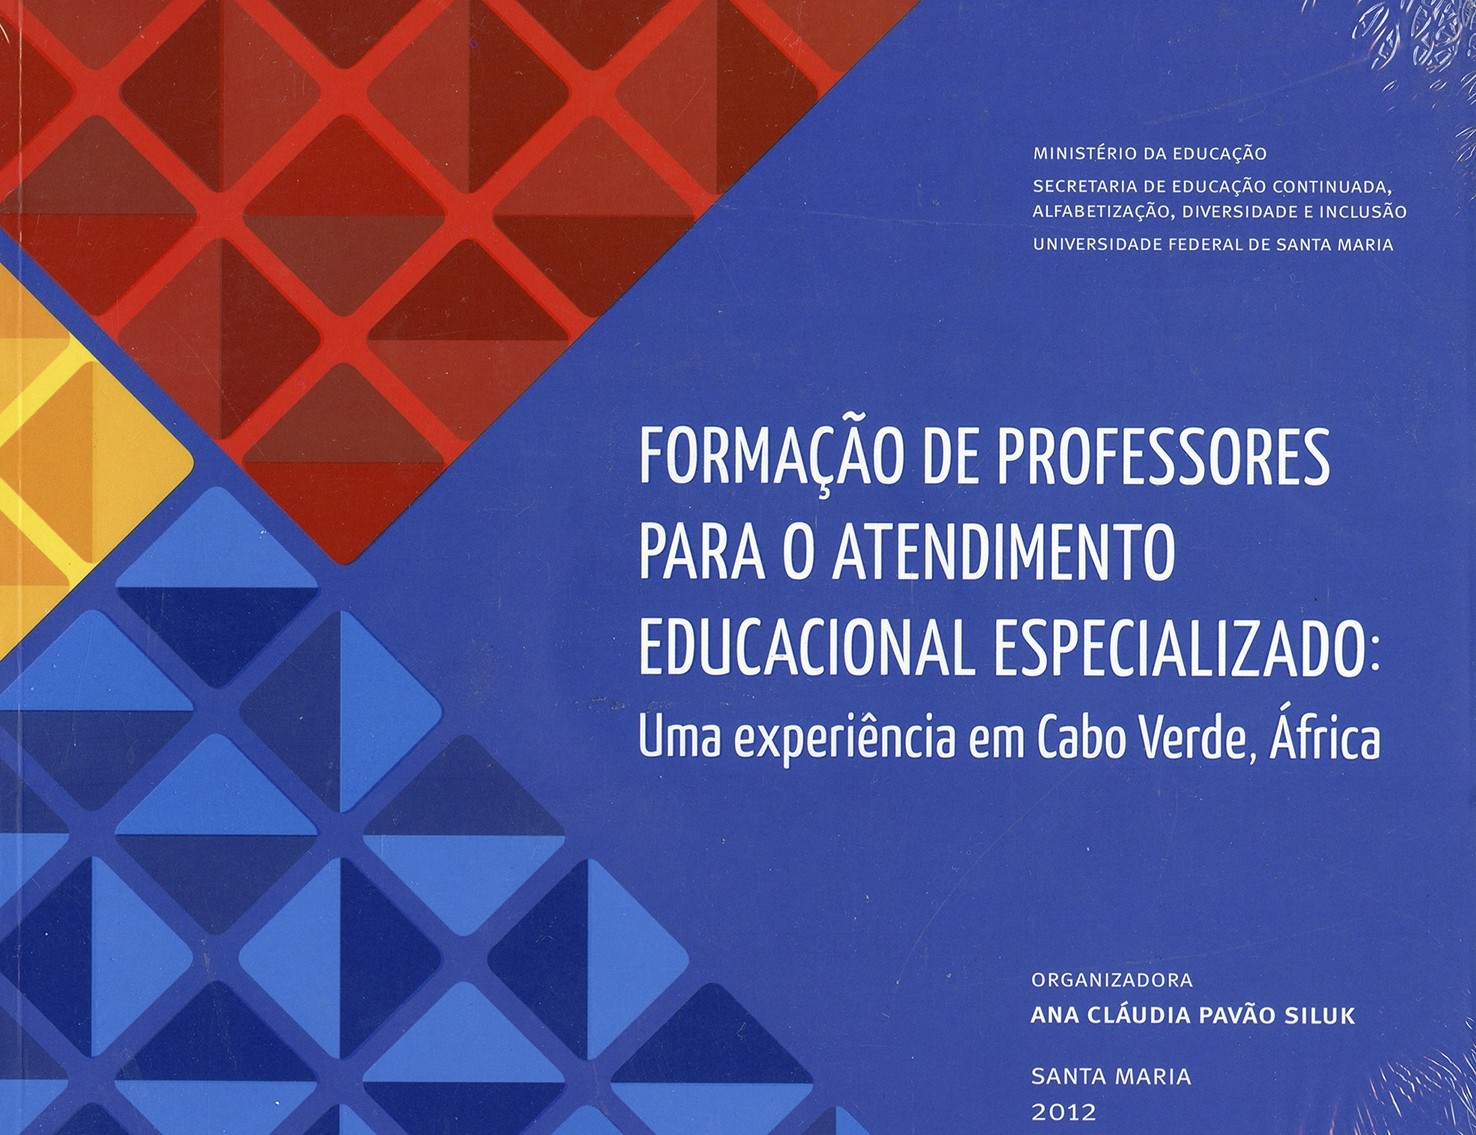 Formação de professores para o atendimento educacional especializado: Uma experiência em Cabo Verde - África